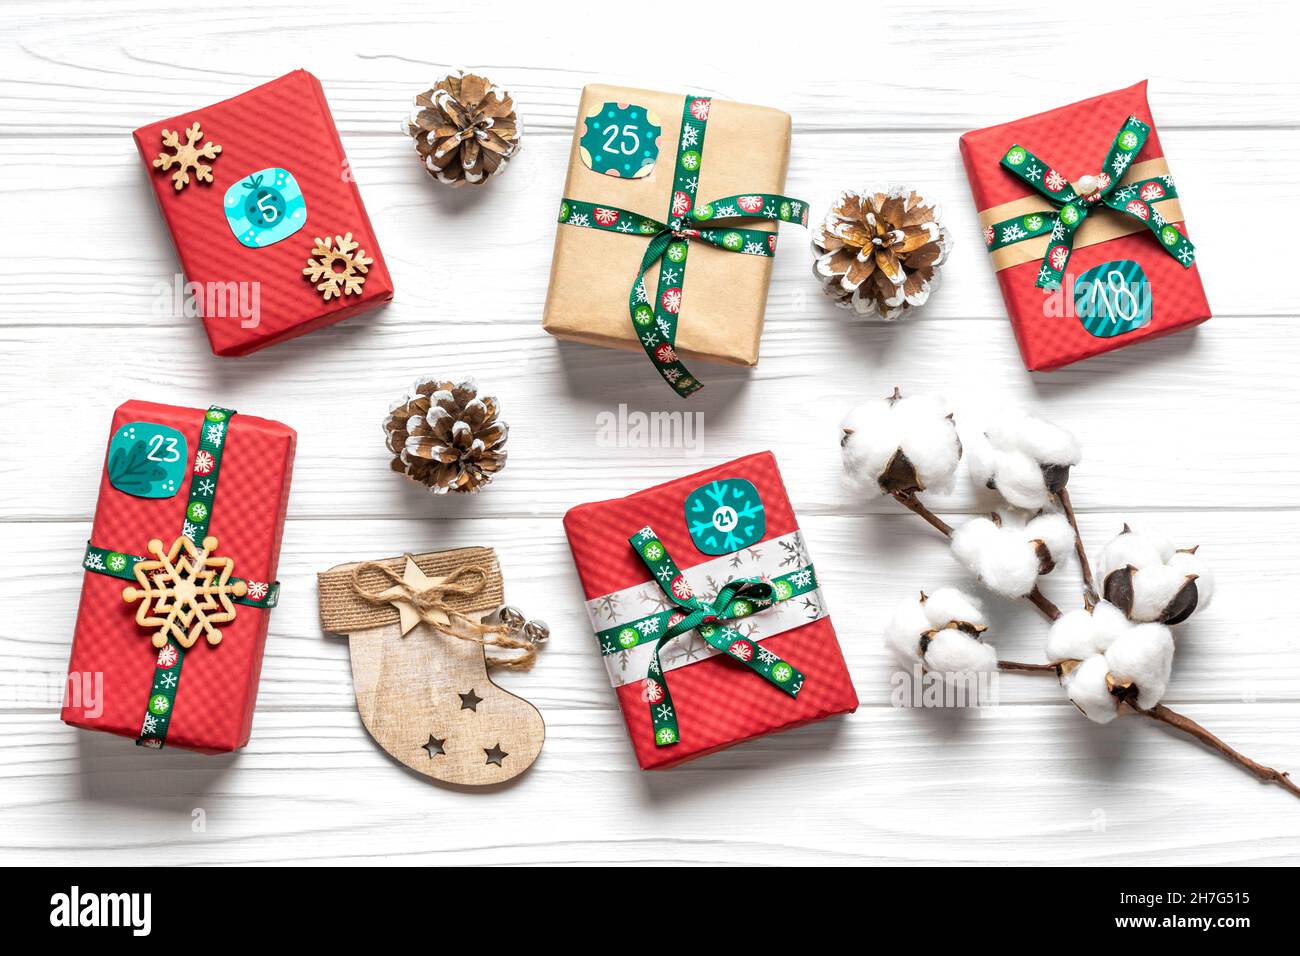 Cajas de regalo rojas, verdes envueltas a mano decoradas con cintas, copos  de nieve y números, decoraciones de Navidad y decoración sobre mesa blanca  de Advenimiento de Navidad Fotografía de stock -